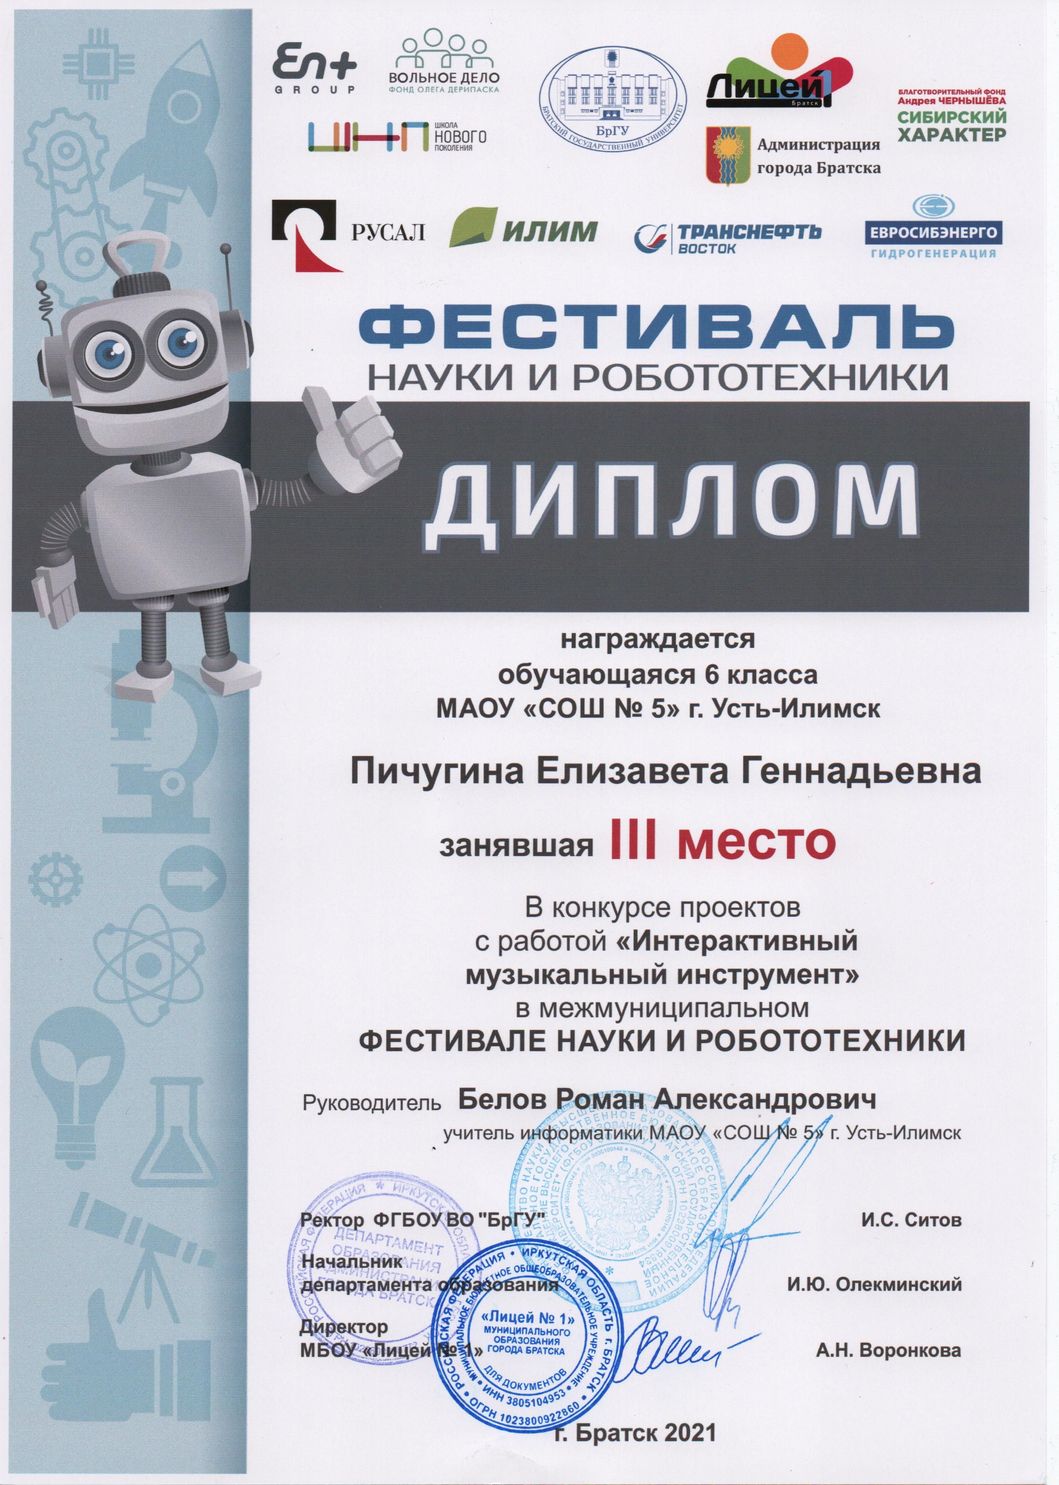 Межмуниципальный фестиваль науки и робототехники, г. Братск - ДИПЛОМ II СТЕПЕНИ